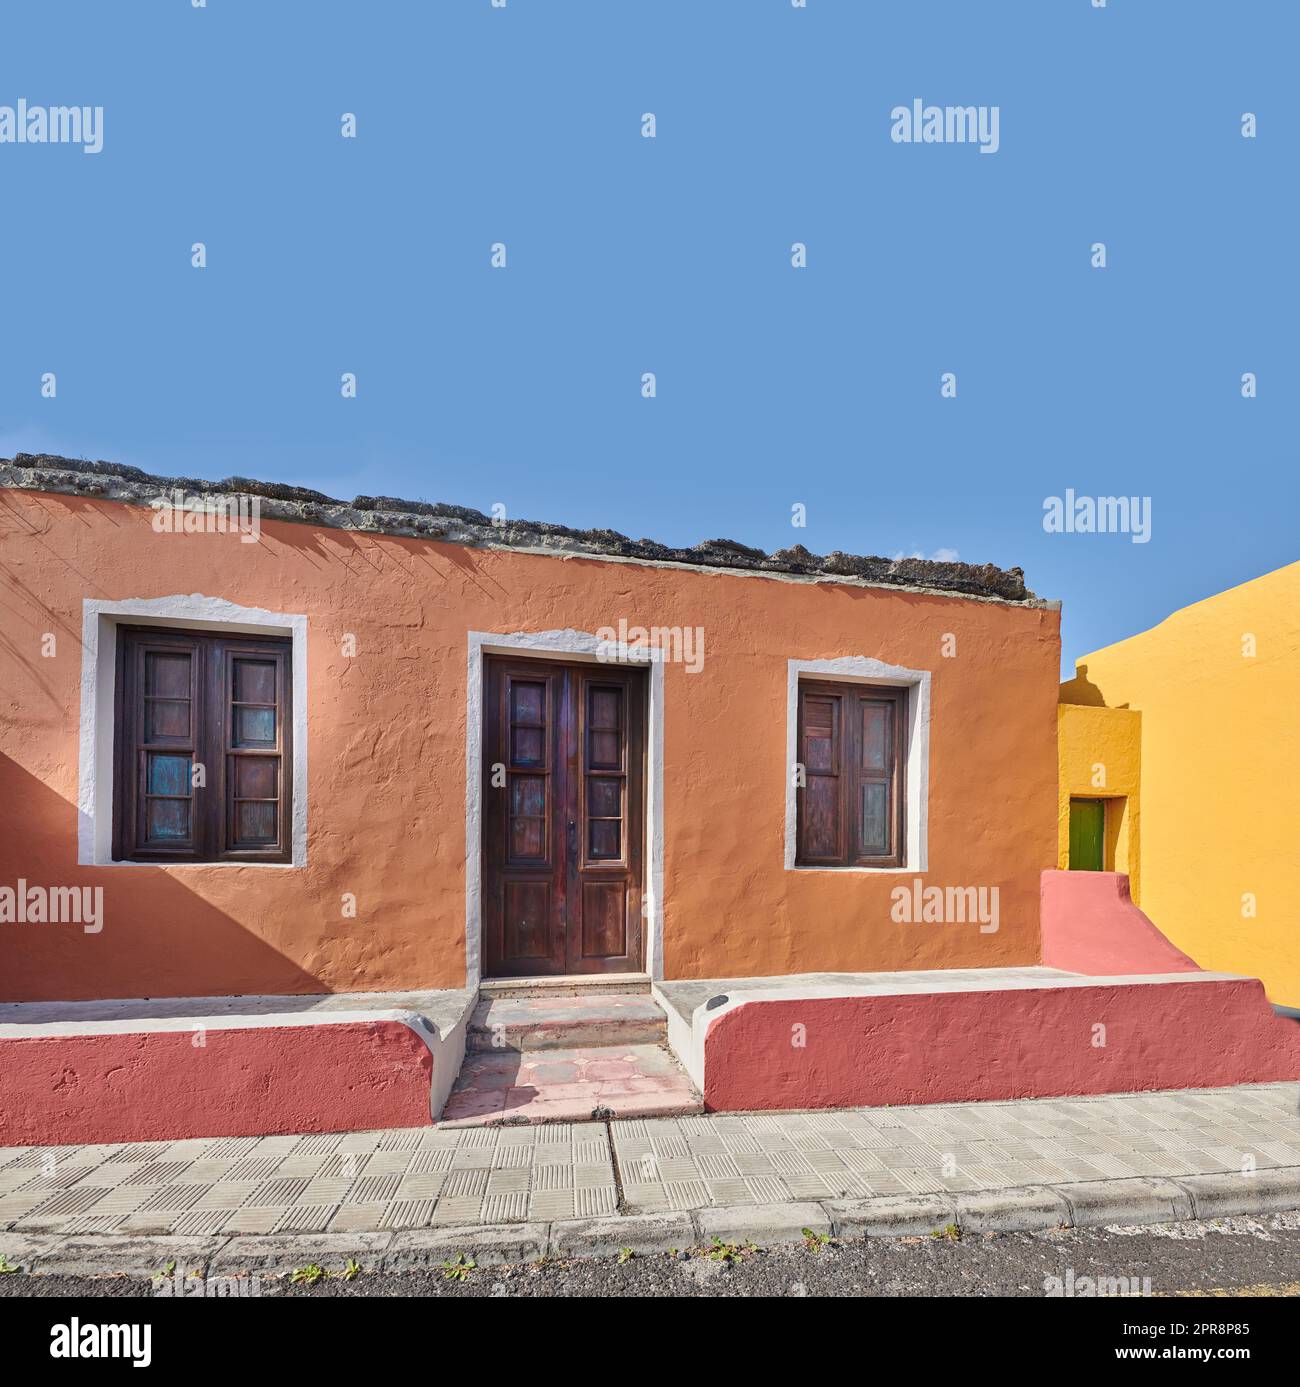 Bâtiment coloré dans une ville animée de Santa Cruz de la Palma avec ciel bleu clair copyspace fond sur une journée ensoleillée. Maisons résidentielles lumineuses dans un village d'une destination touristique populaire outre-mer Banque D'Images